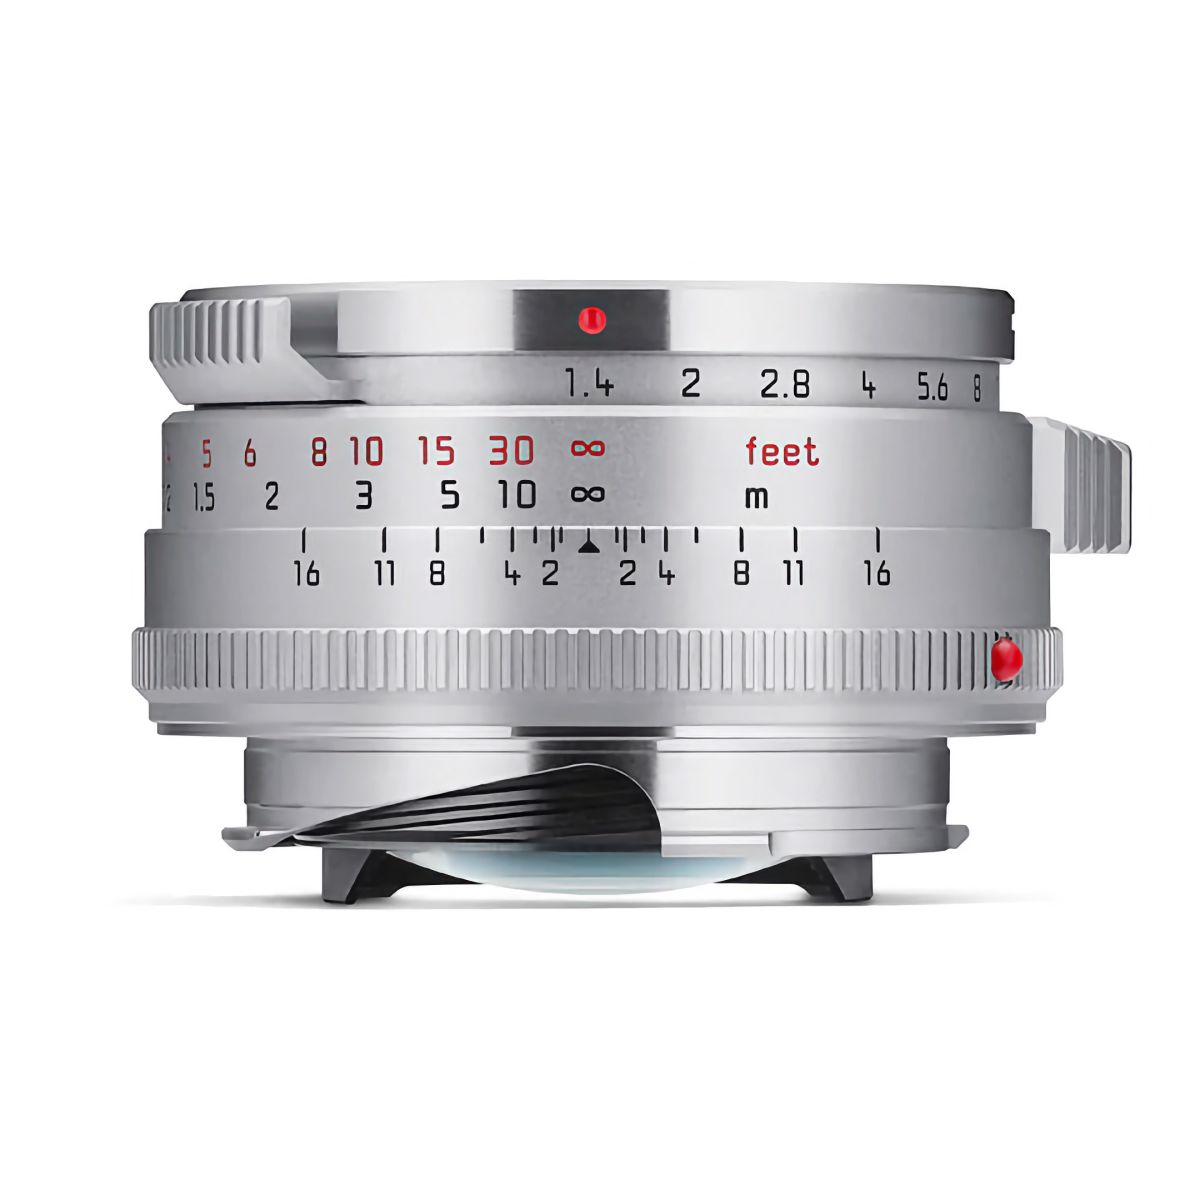 Leica Summilux M 35mm F1.4